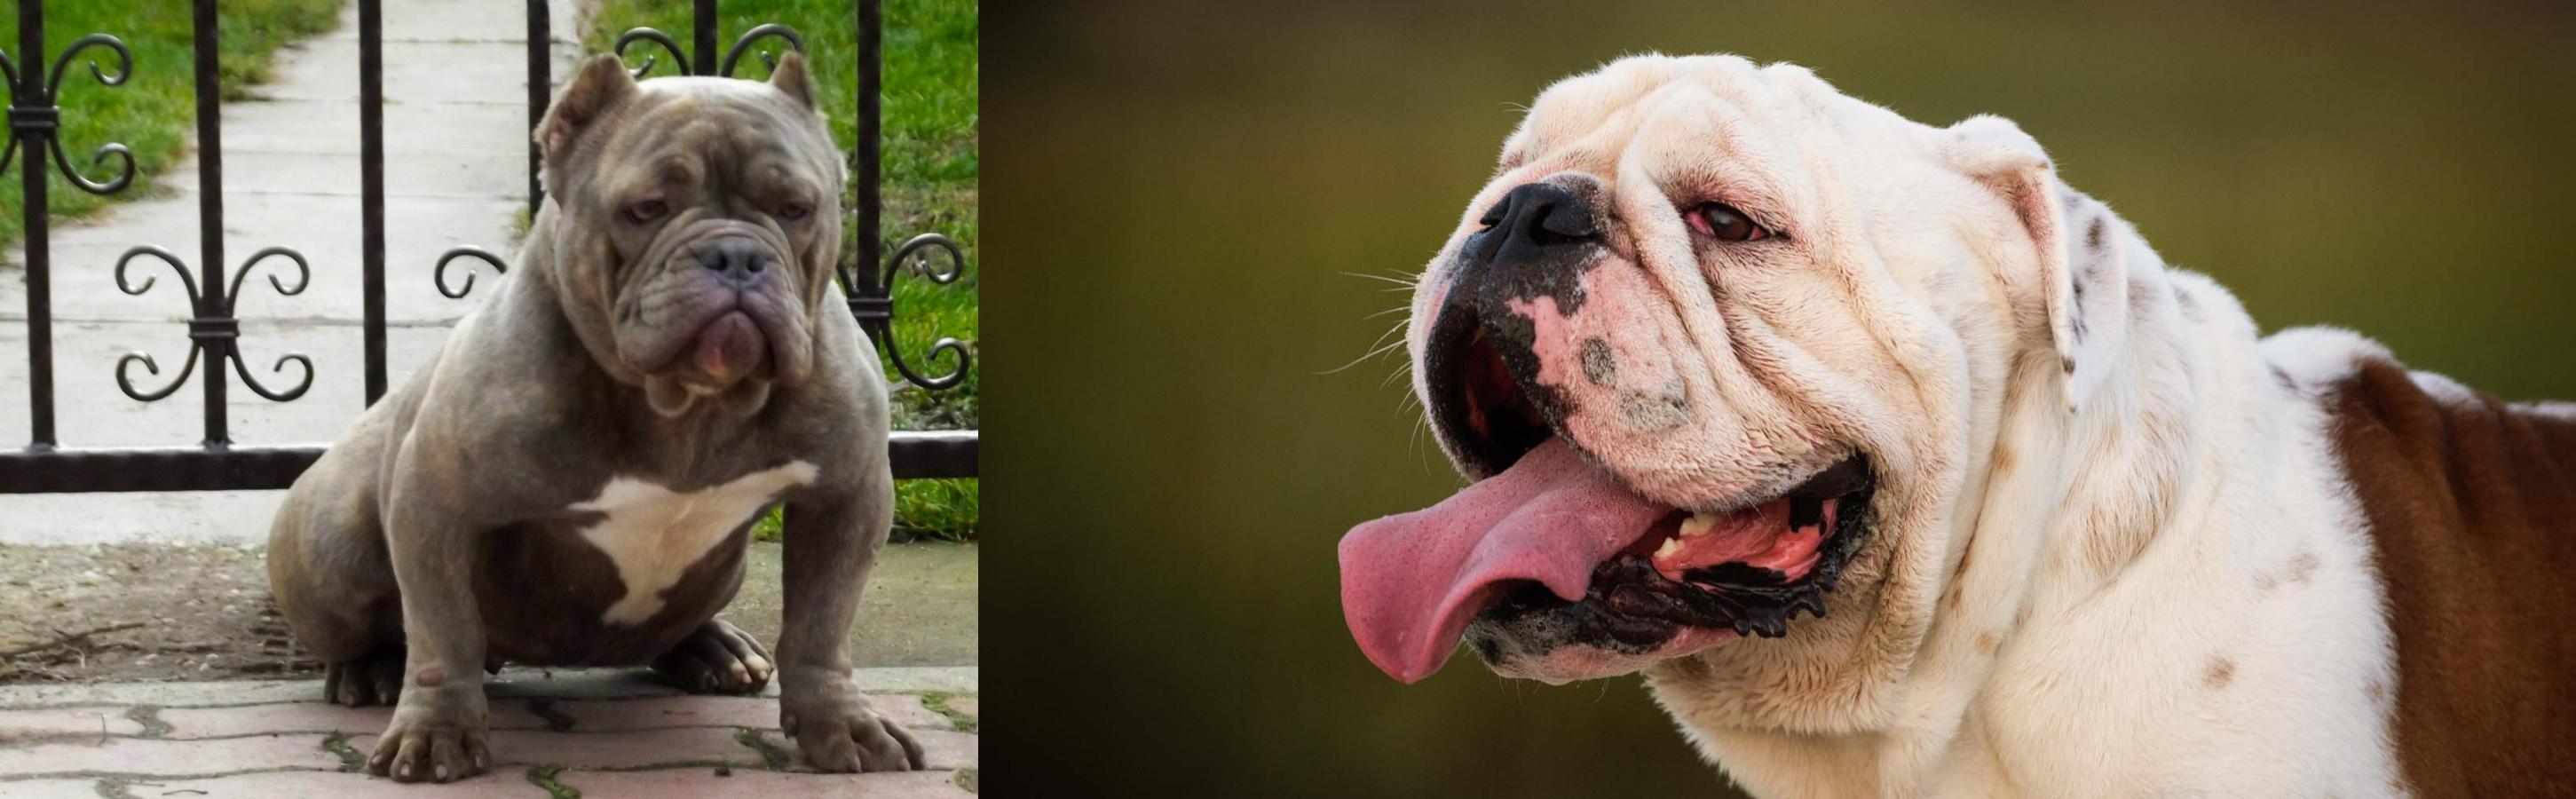 American Bully vs English Bulldog - Breed Comparison